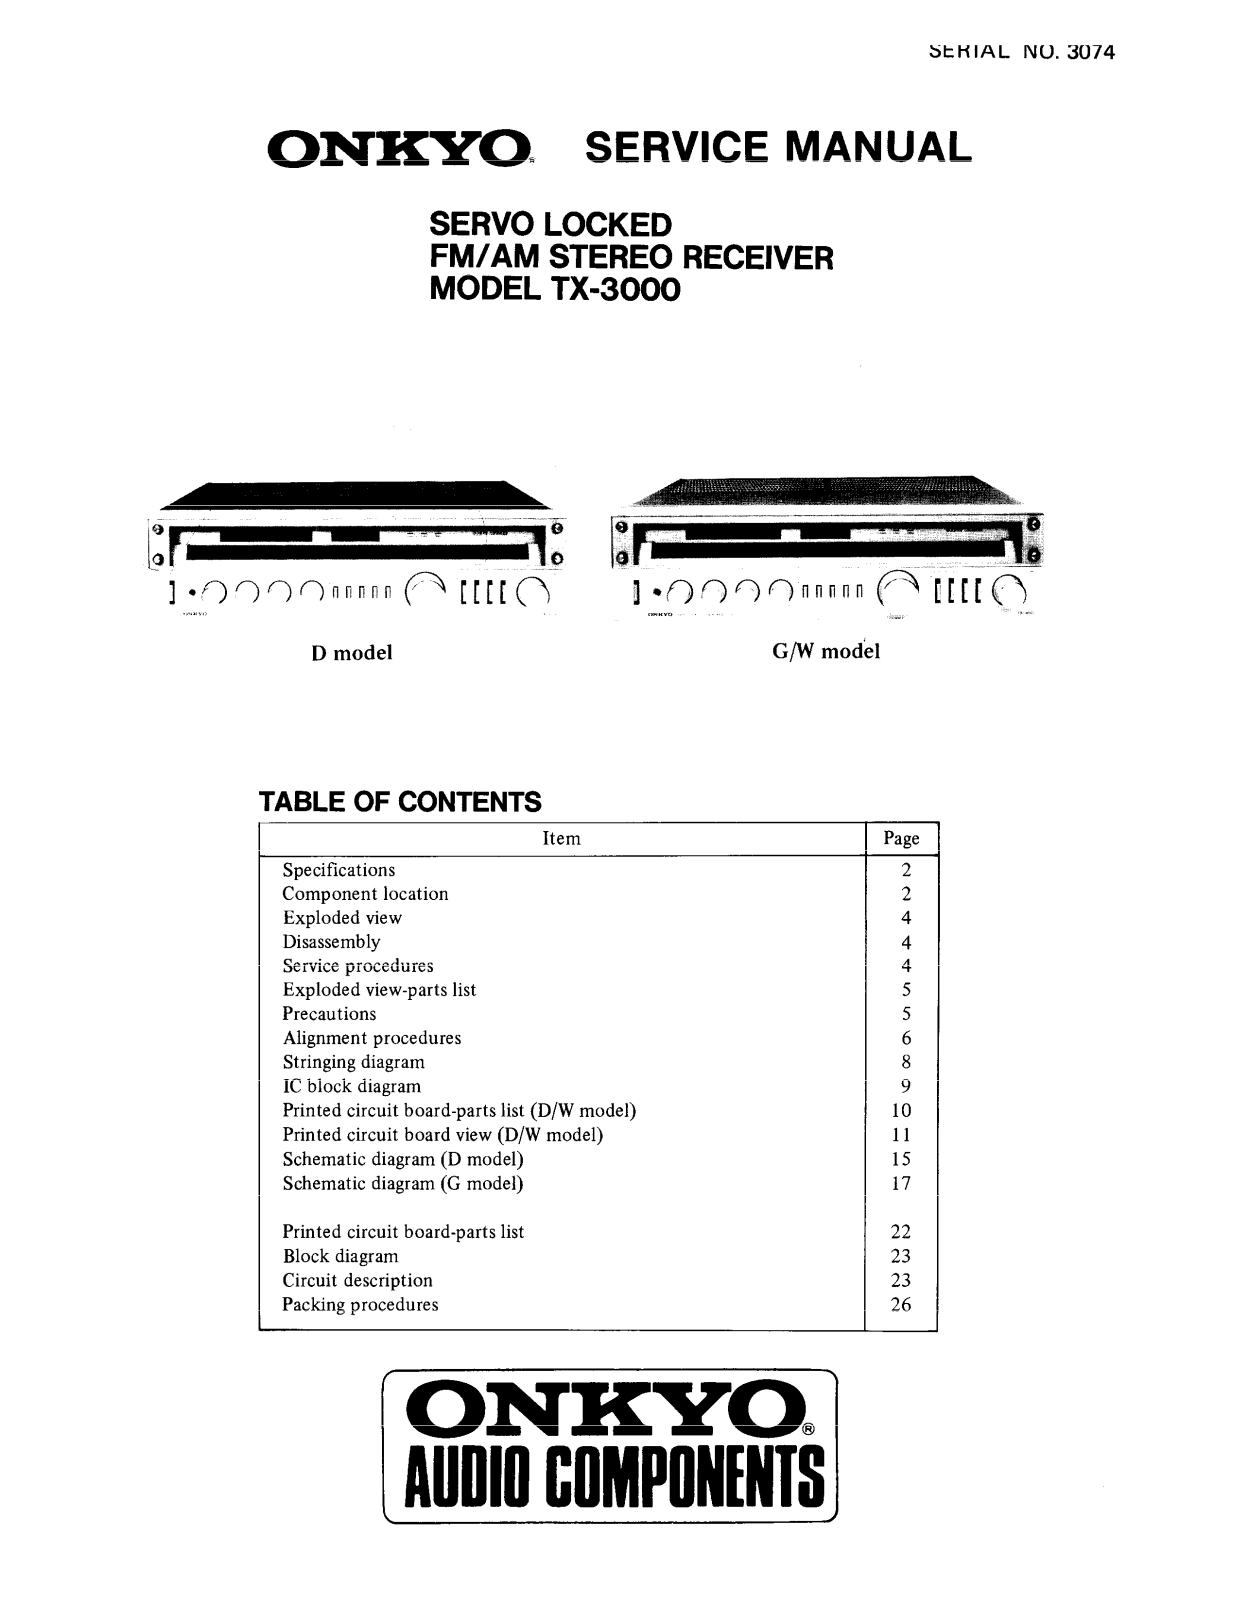 Onkyo TX-3000 Service manual